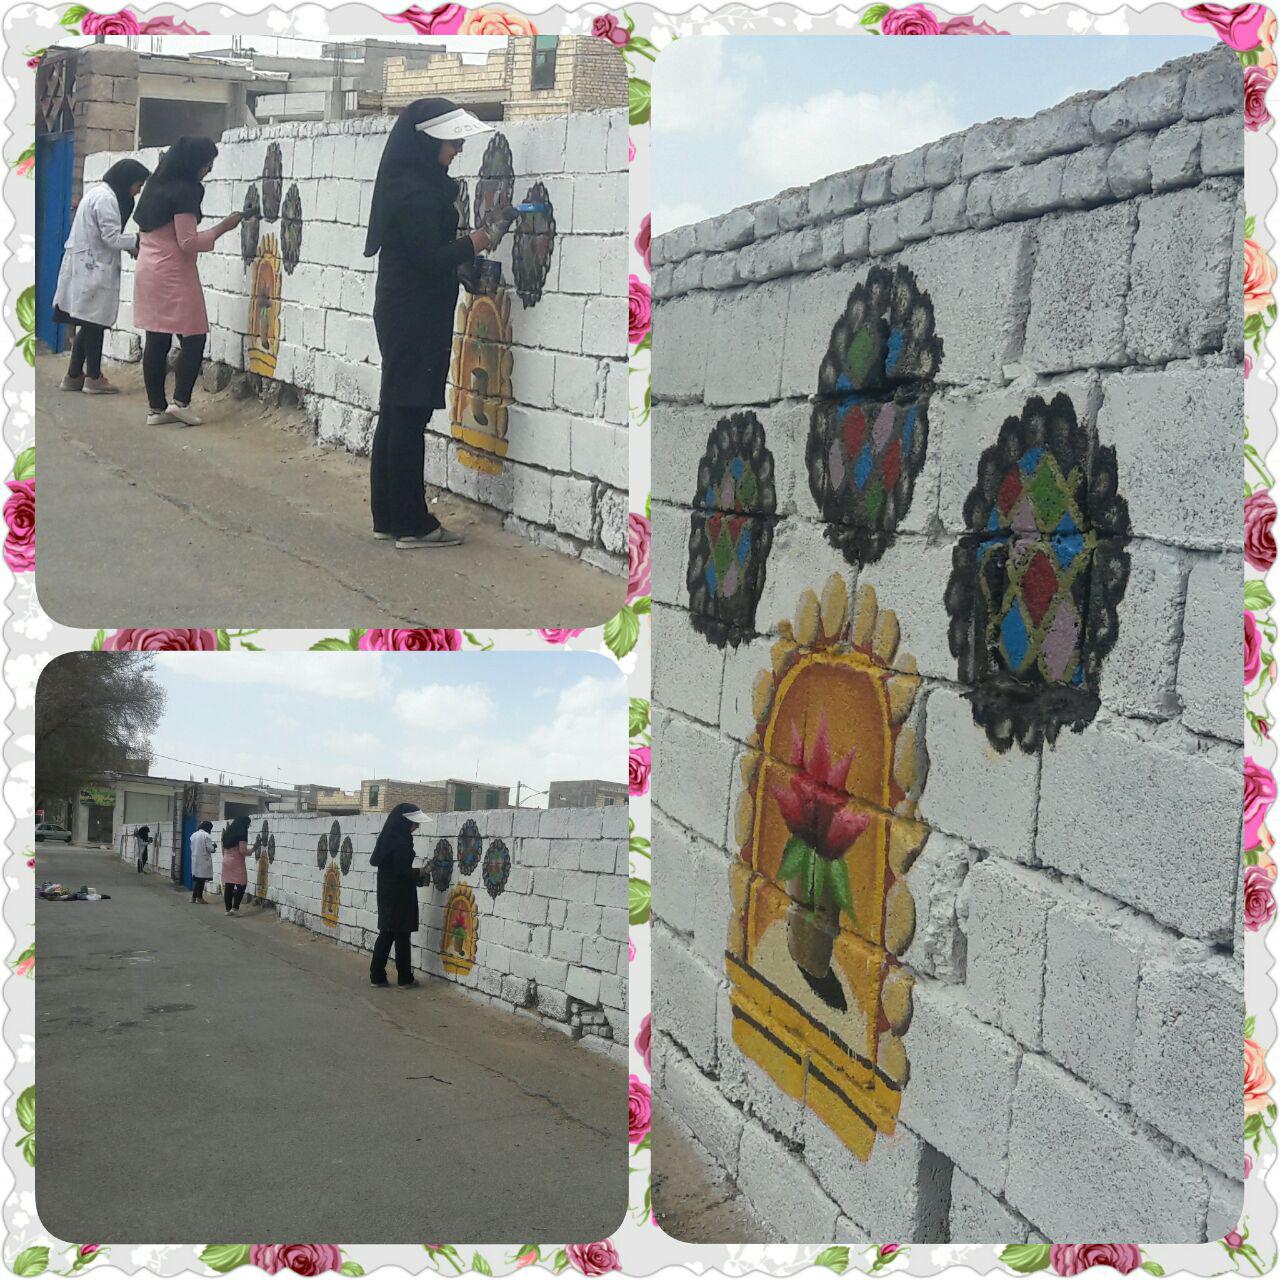 نقاشی دیوارهای شهر باهمکاری دانش آموزان گرافیست هنرستان امام حسن مجتبی (ع) . خداقوت ویژه به این عزیزان  @alavijehsalam